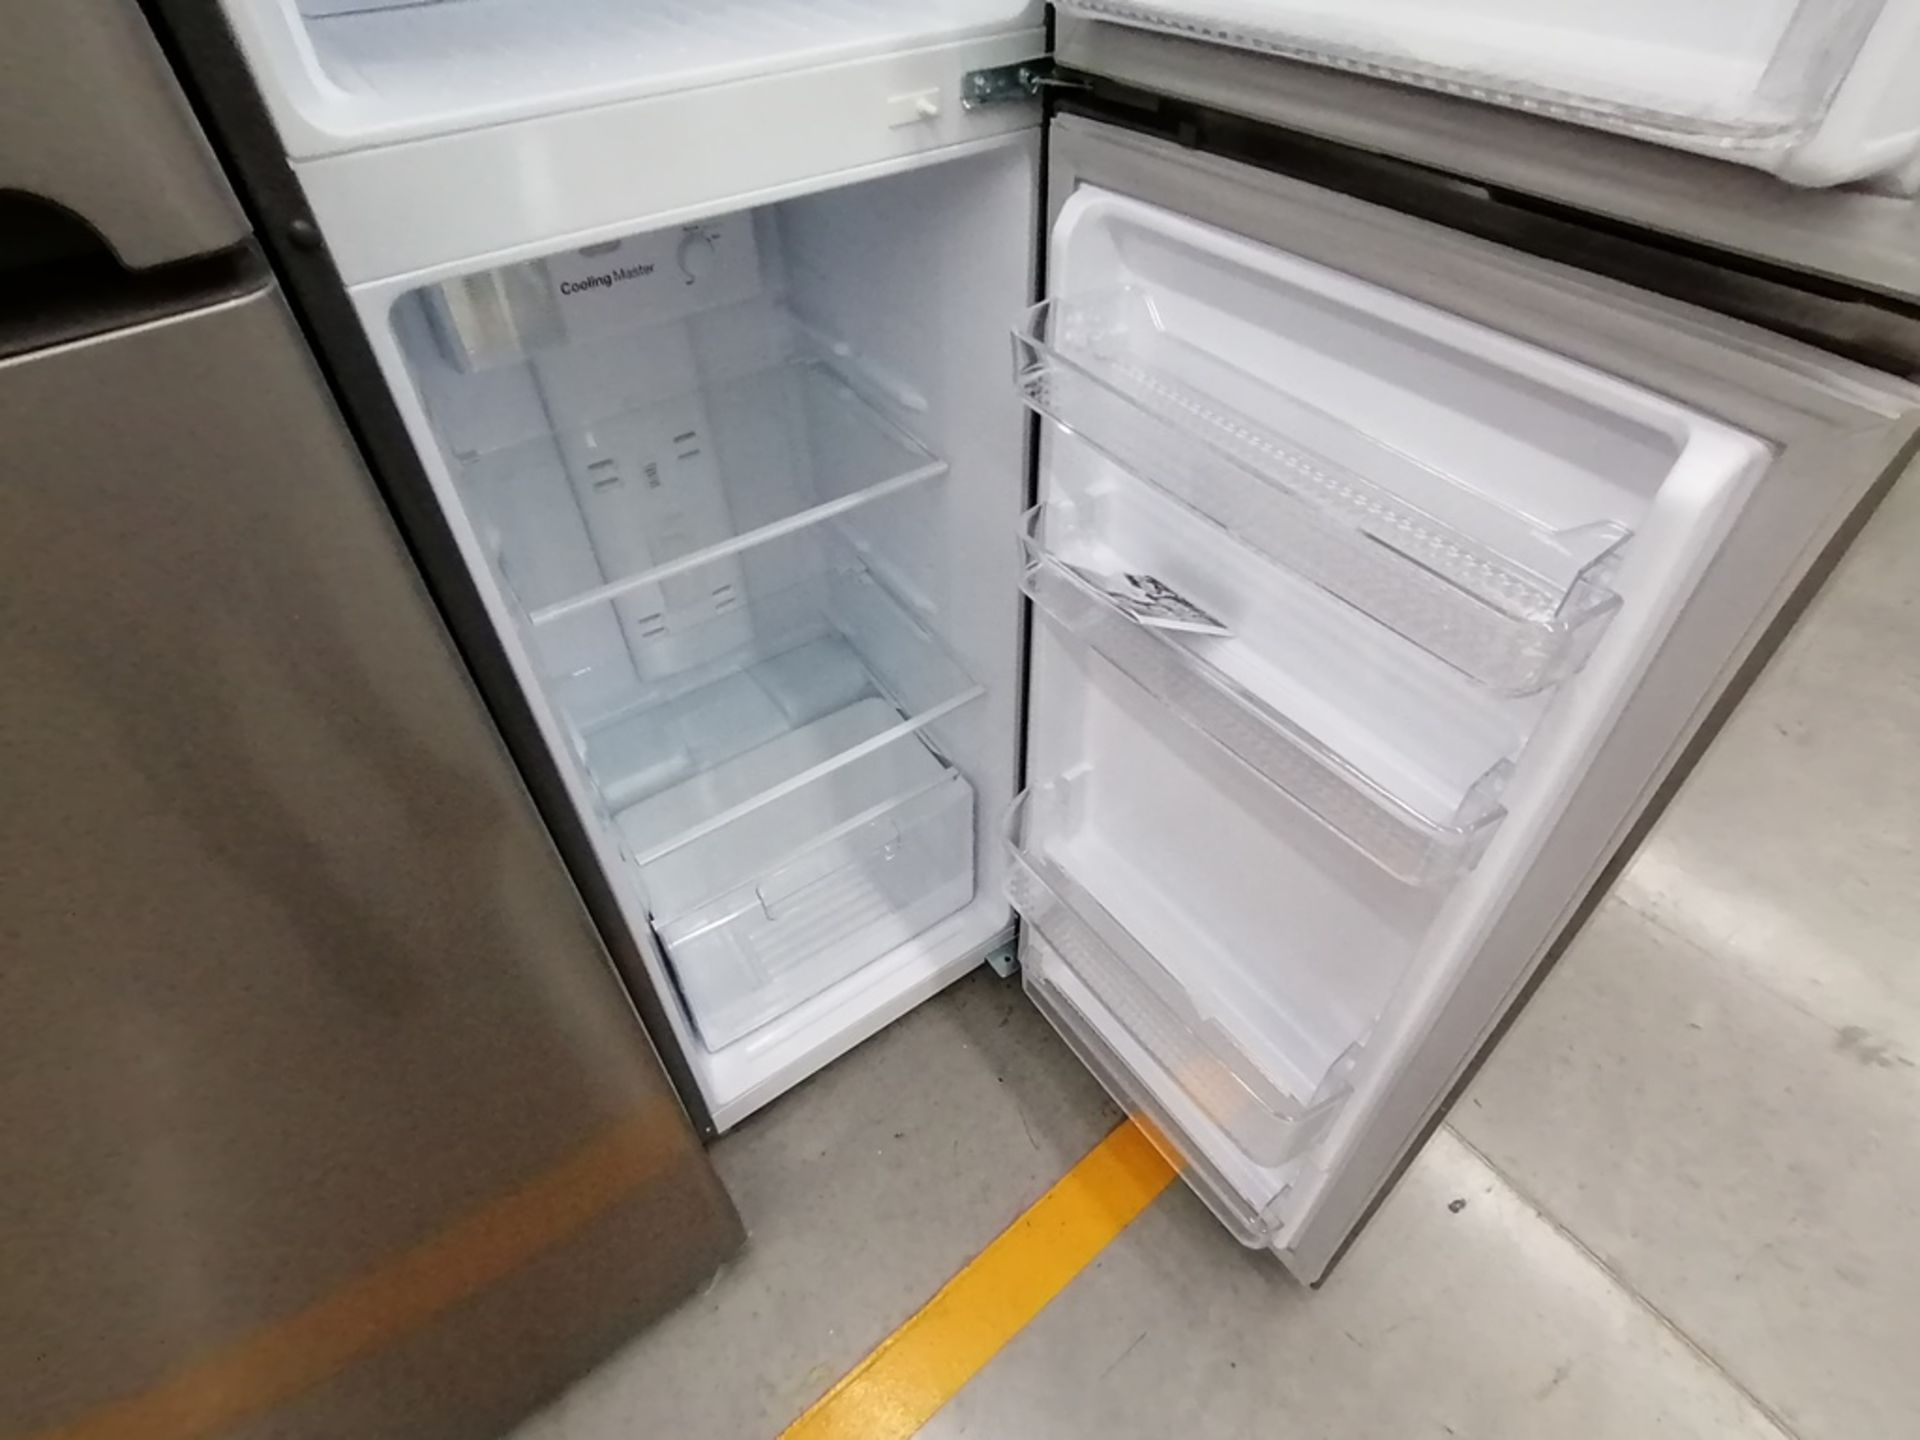 Lote de 2 refrigeradores incluye: 1 Refrigerador, Marca Winia, Modelo DFR25210GN, Serie MR219N11602 - Image 7 of 15